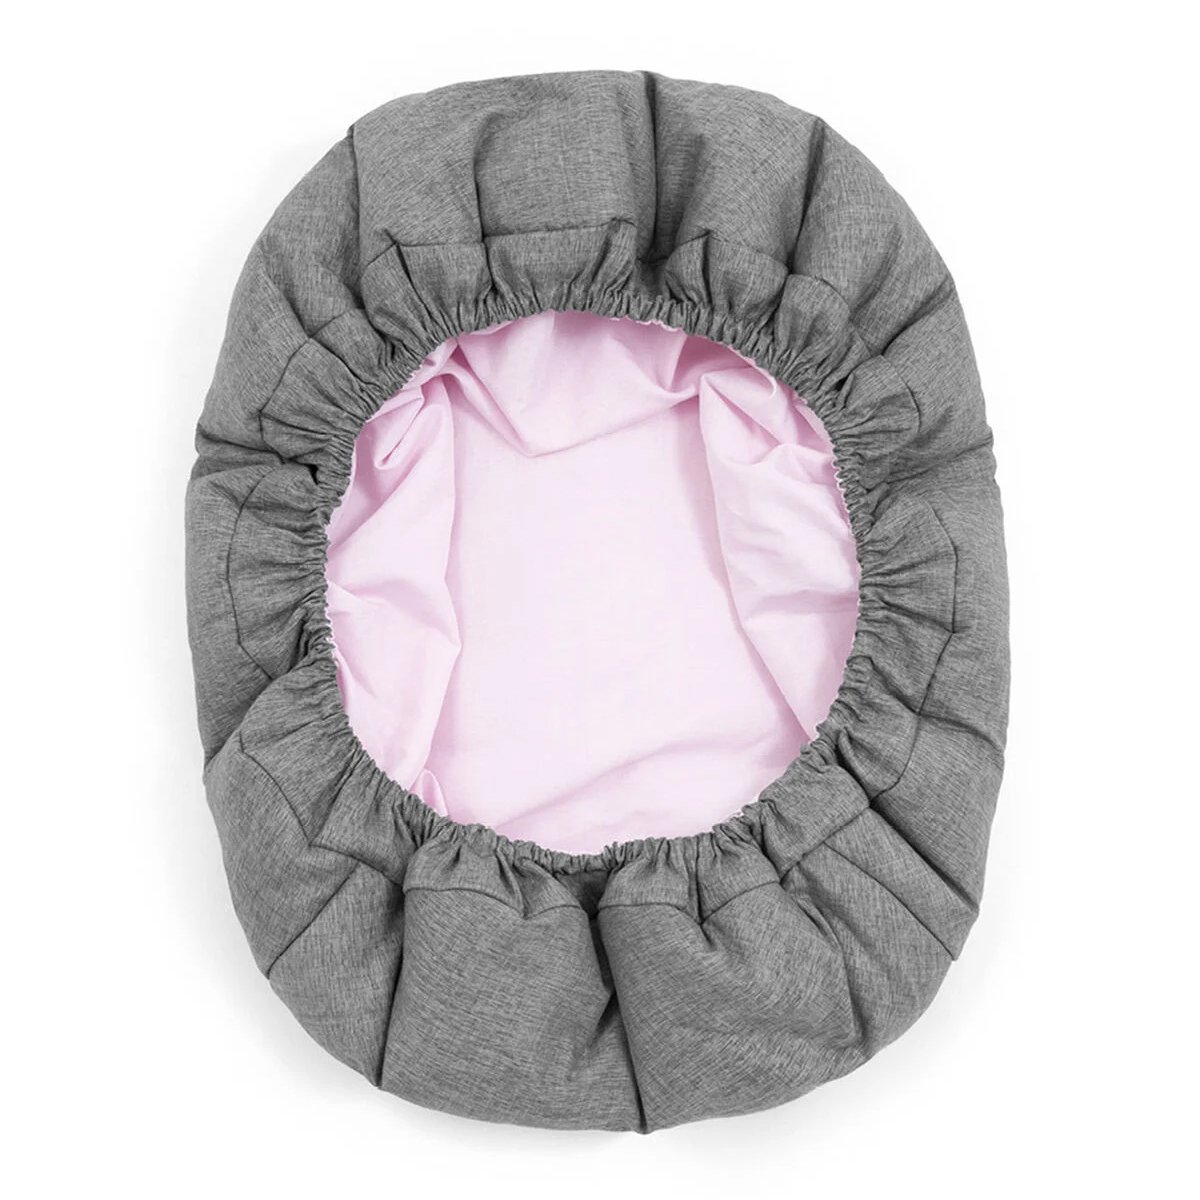 Шезлонг для новорожденного Stokke Nomi Newborn Set White/Grey Pink (625901) - фото 6